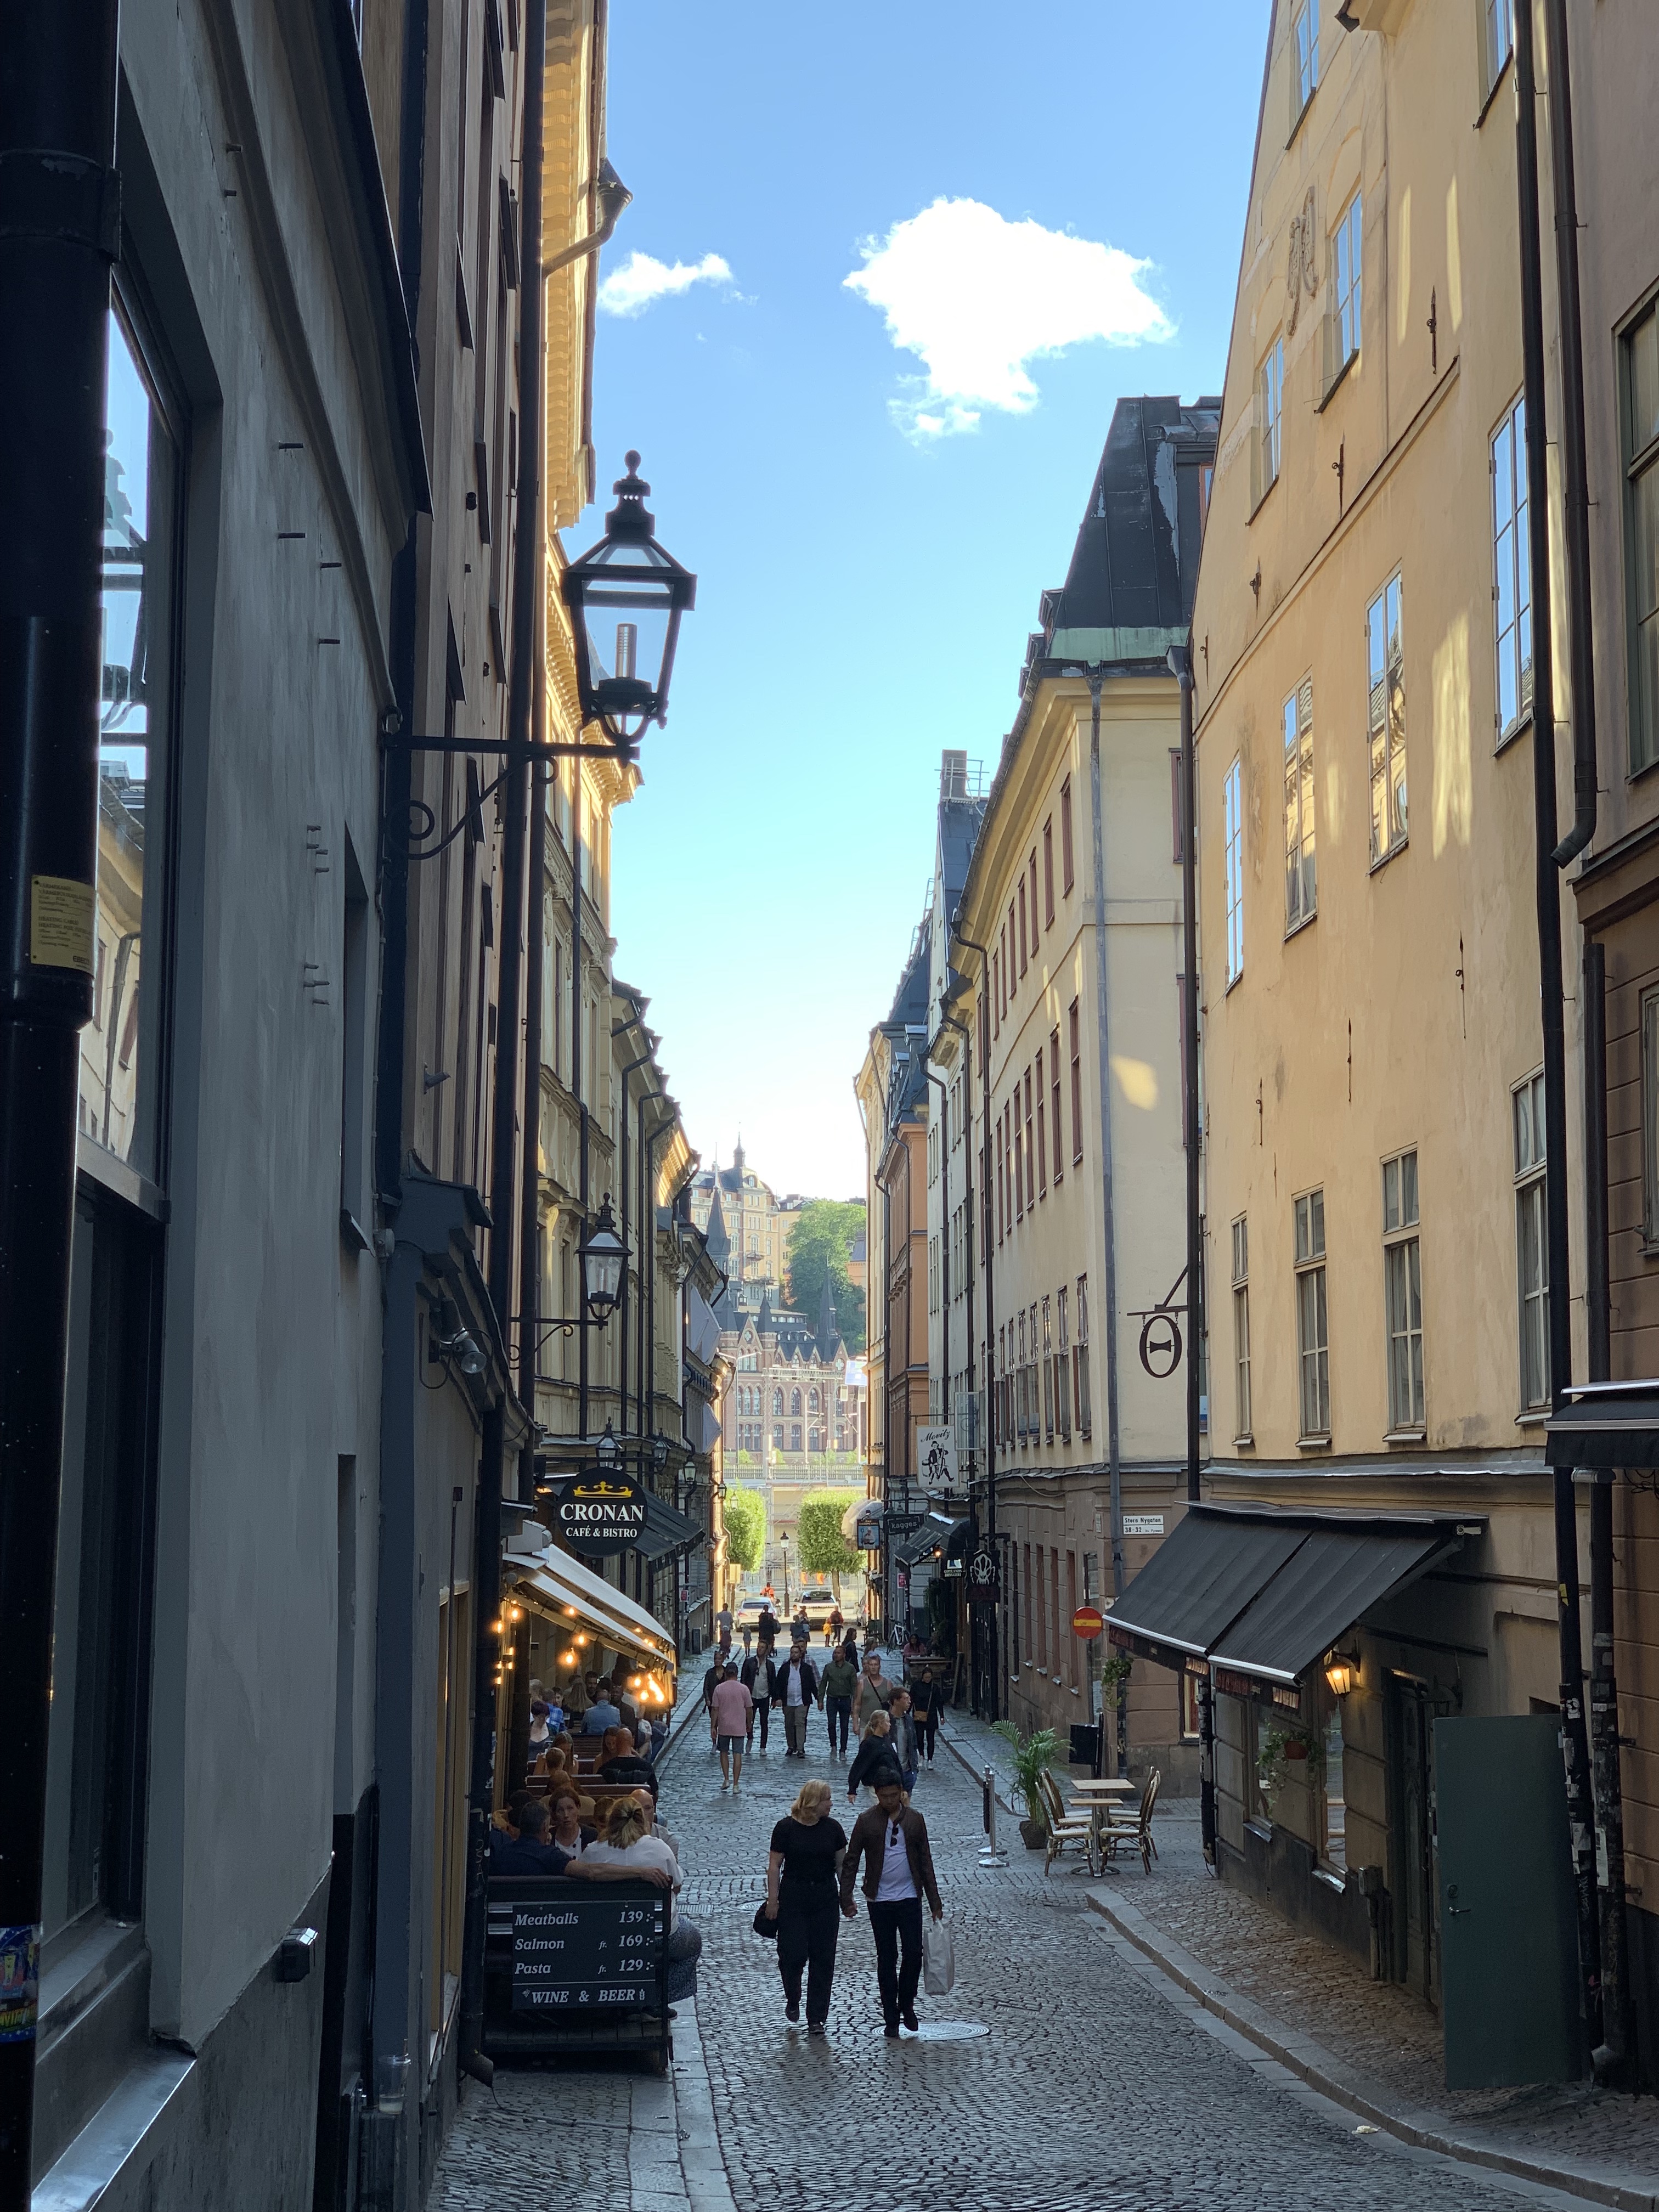 스톡홀름의 유명한 관광 구역 중 하나인 감라스탄. 사람 많던데요..?